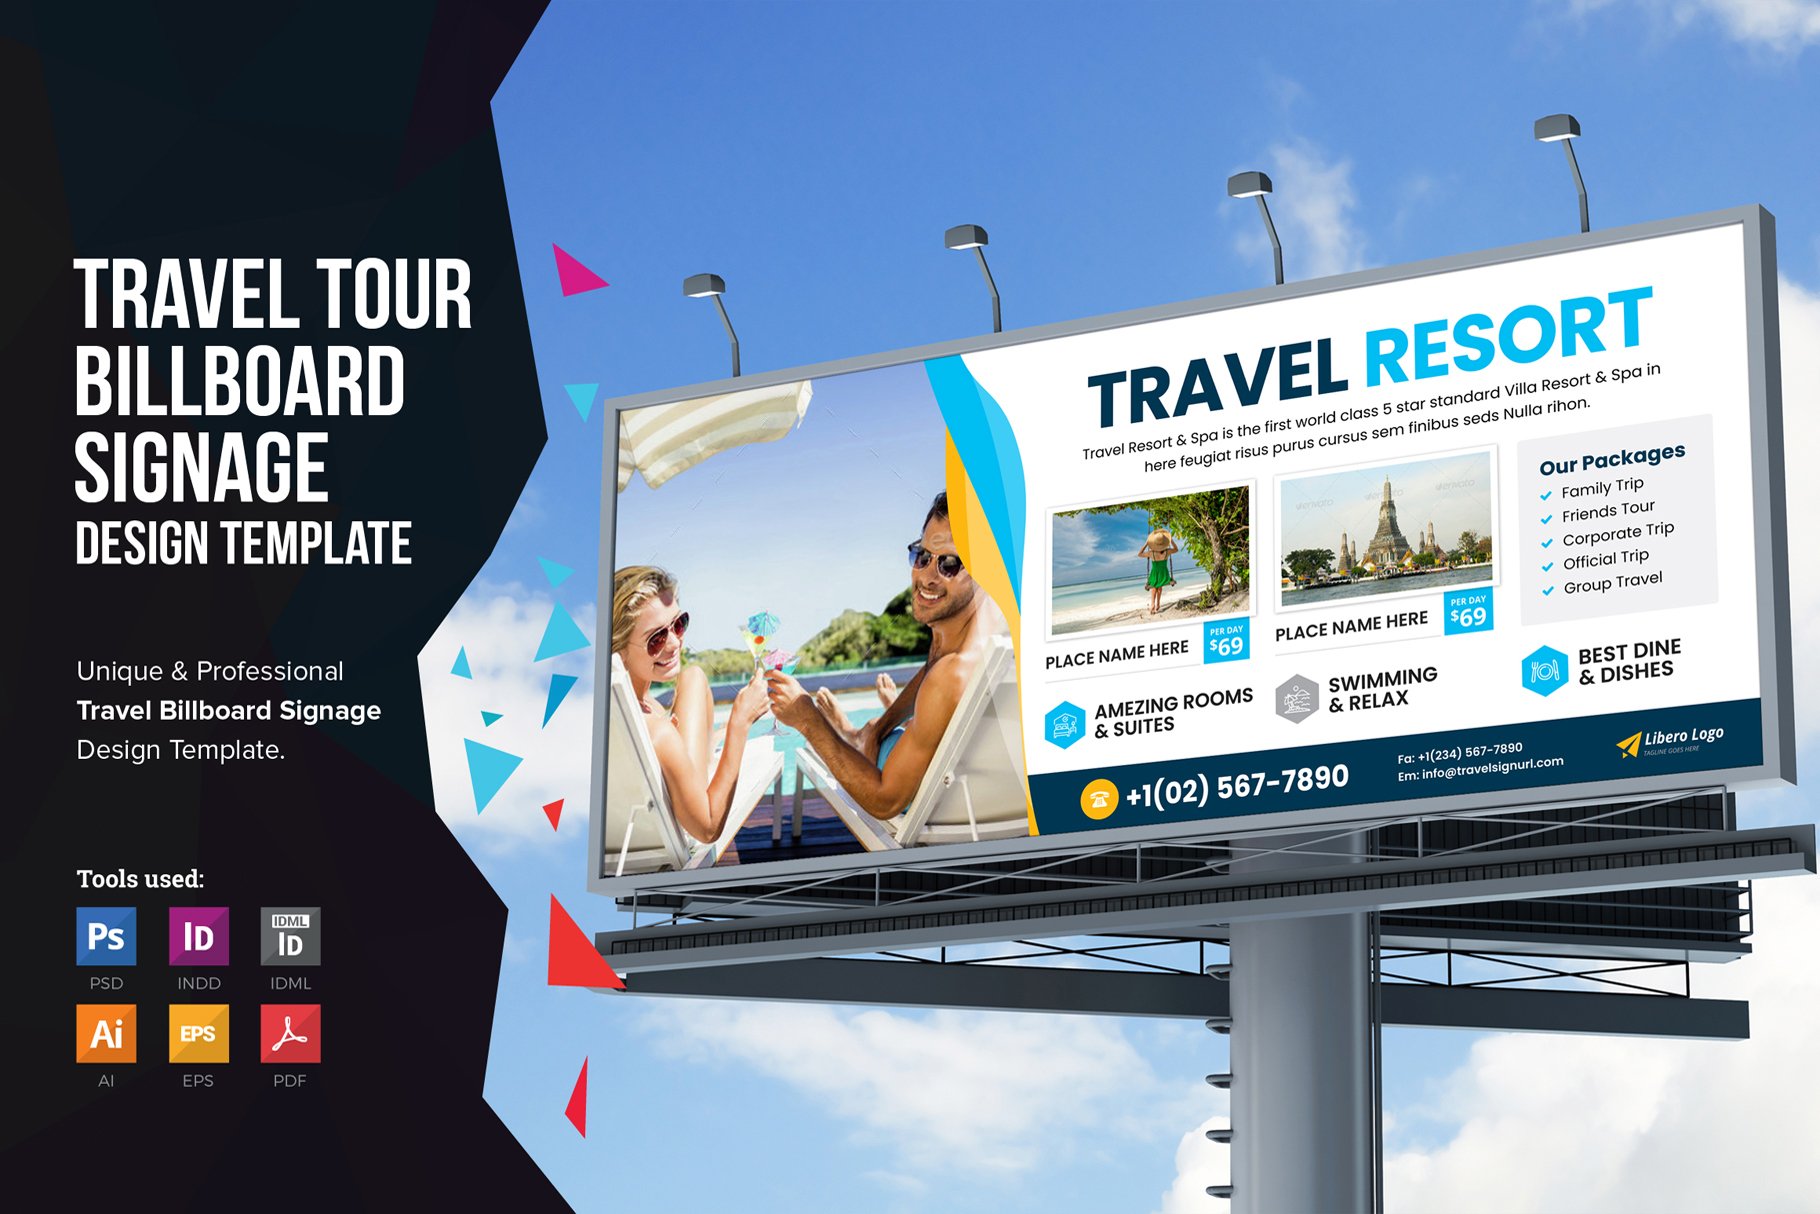 Holiday Travel Billboard Signage v2 cover image.